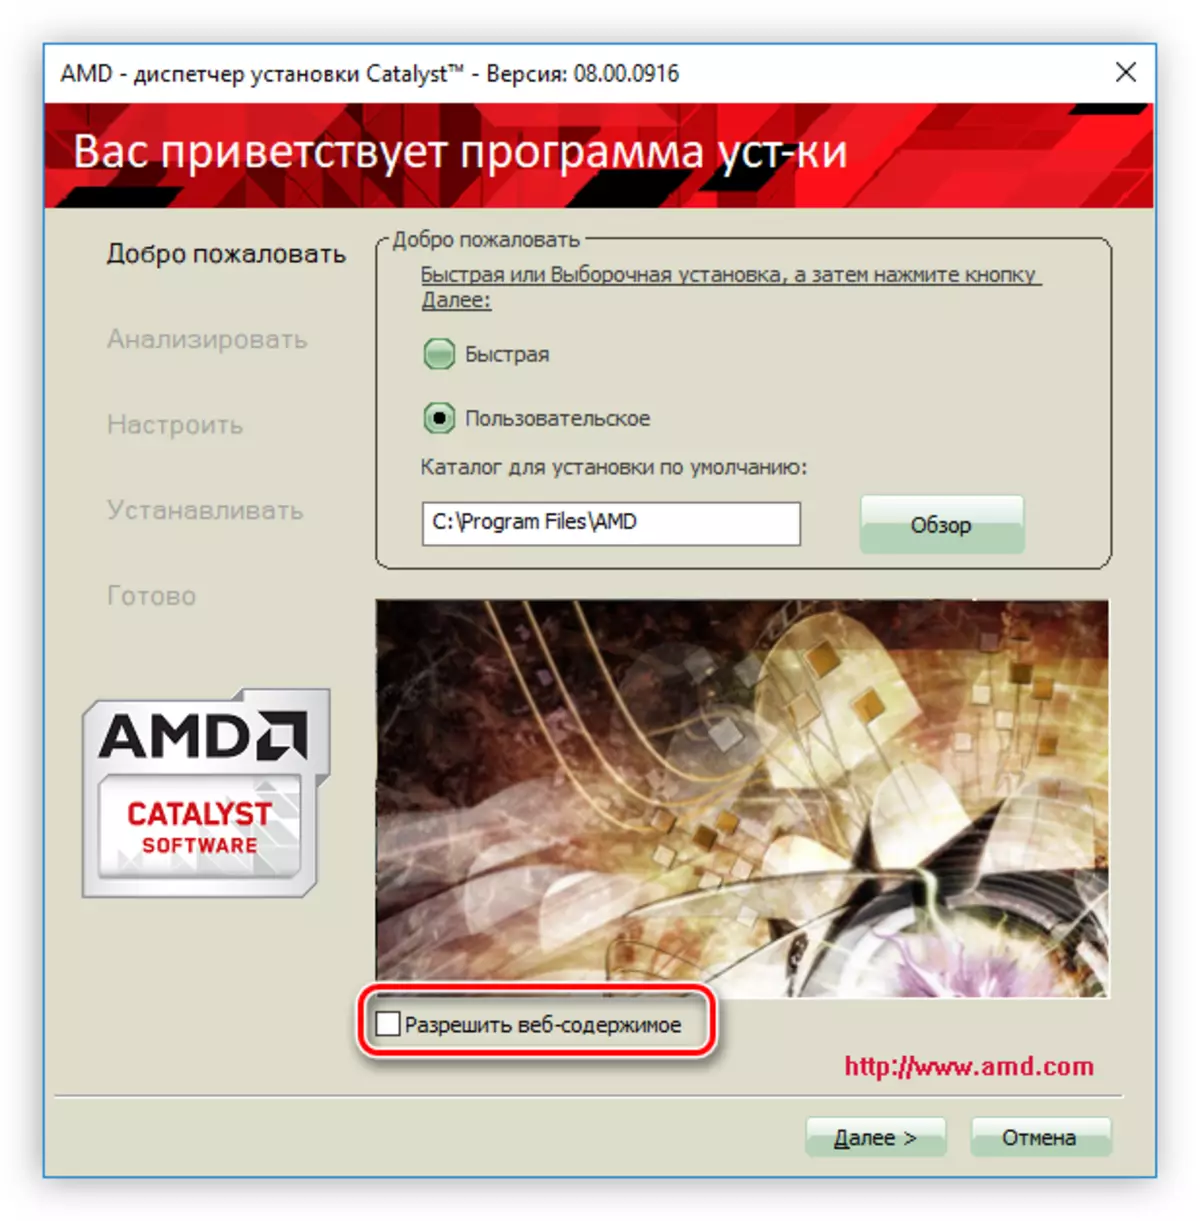 AMD Radeon HD 7640G వీడియో కార్డ్ కోసం డ్రైవర్ యొక్క సంస్థాపన సమయంలో ప్రకటనల బ్యానర్లు నిలిపివేయడానికి టిక్ చేయండి